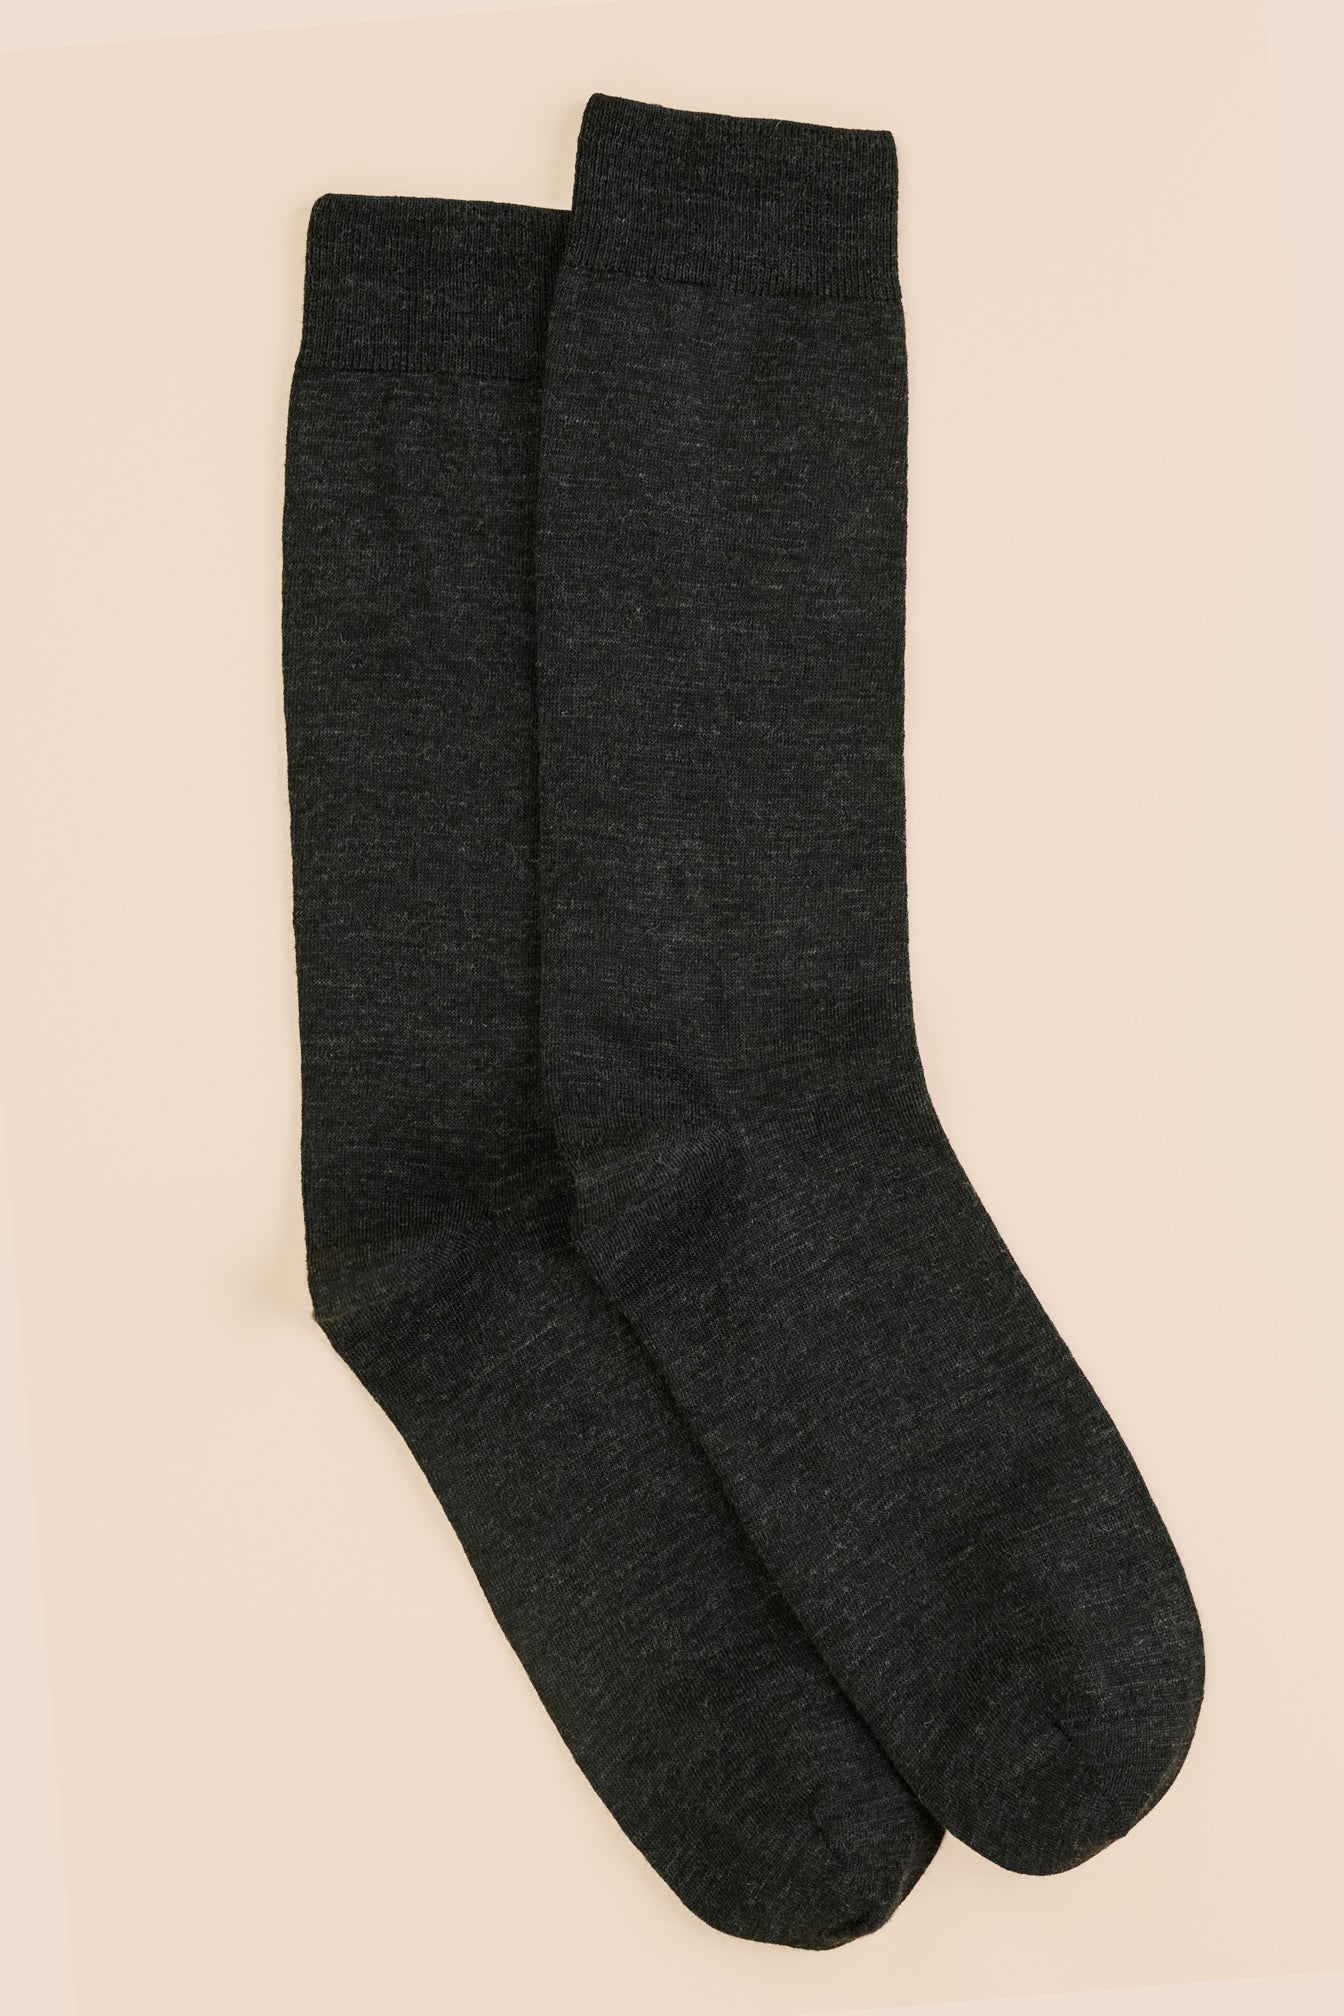 Pétrone chaussettes laine mérinos gris anthracite homme